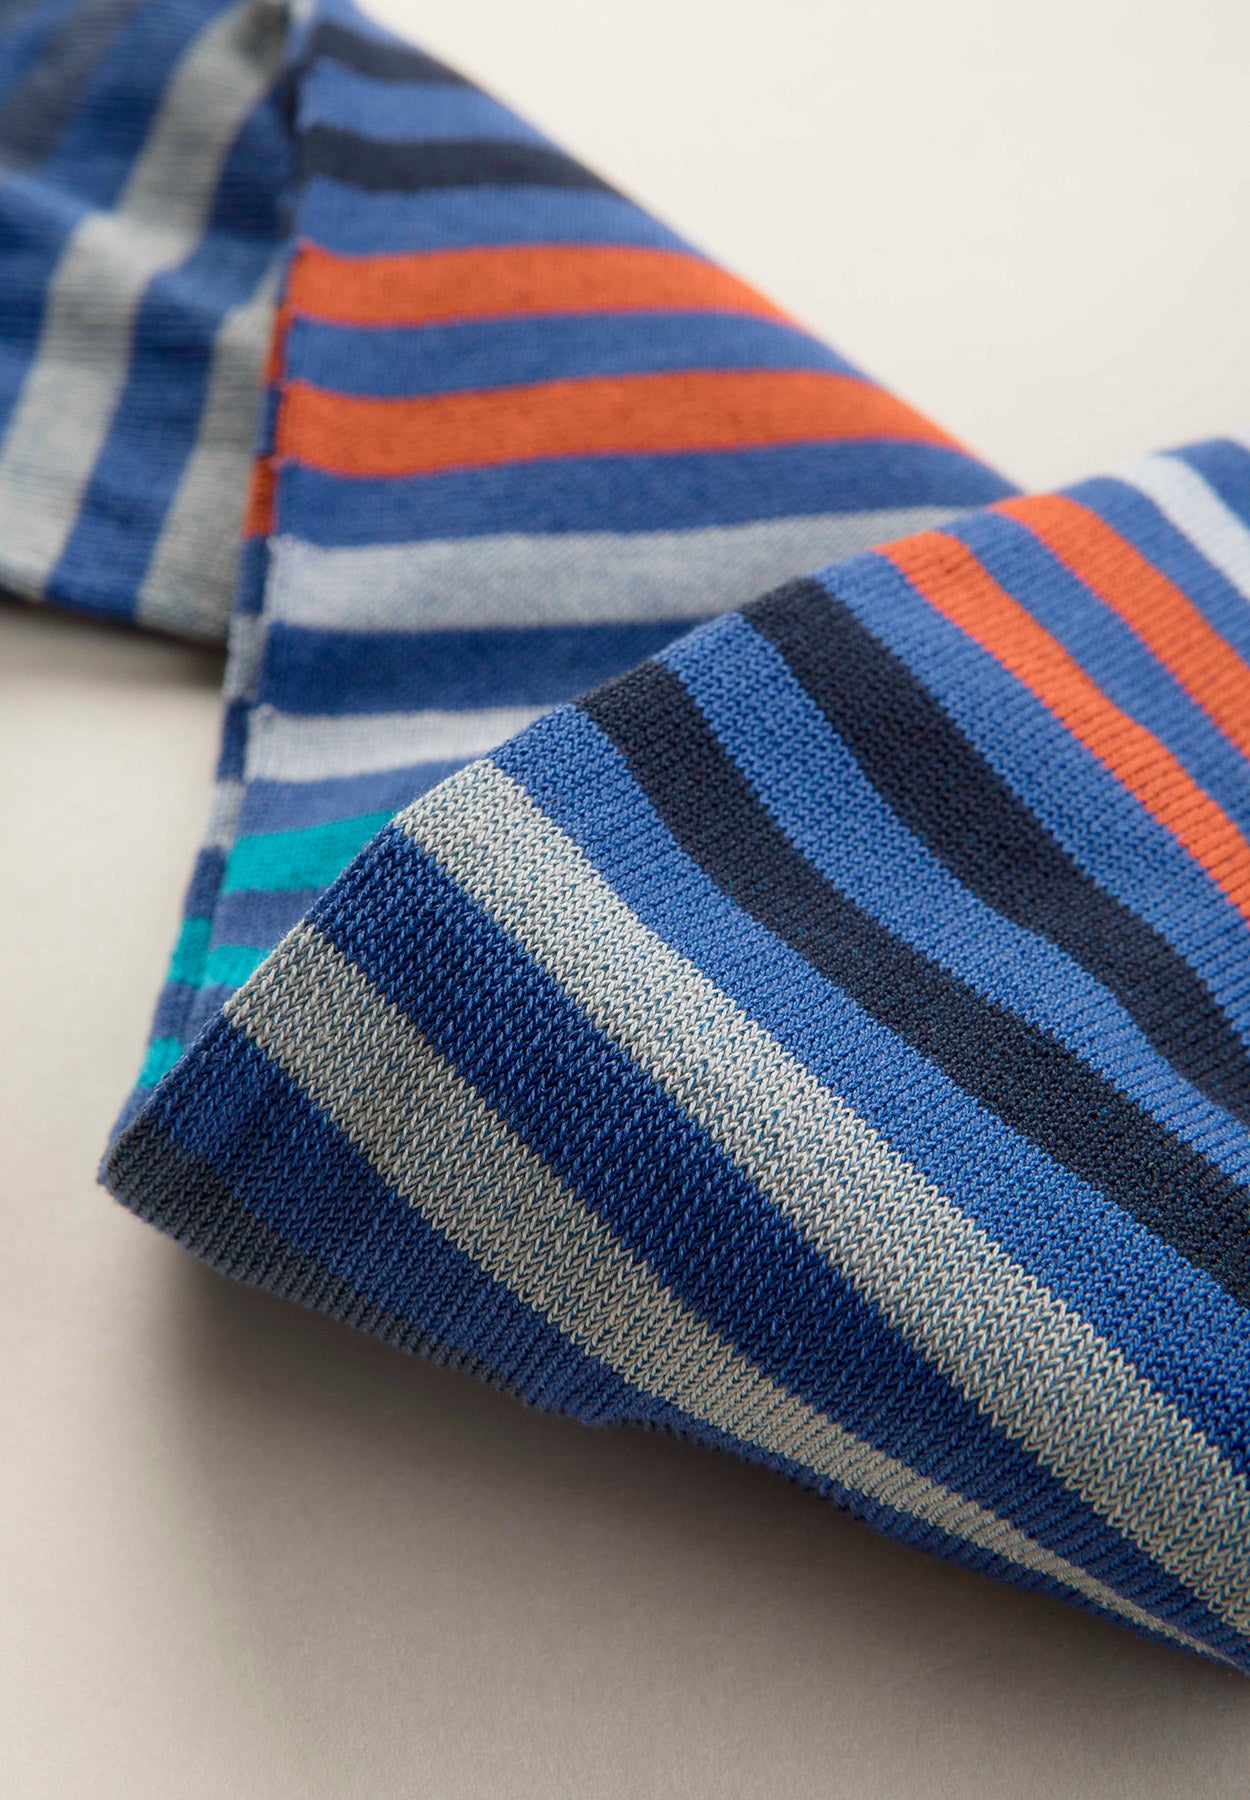 Königliche Socken aus Stretch-Baumwolle mit mehrfarbigen Streifen